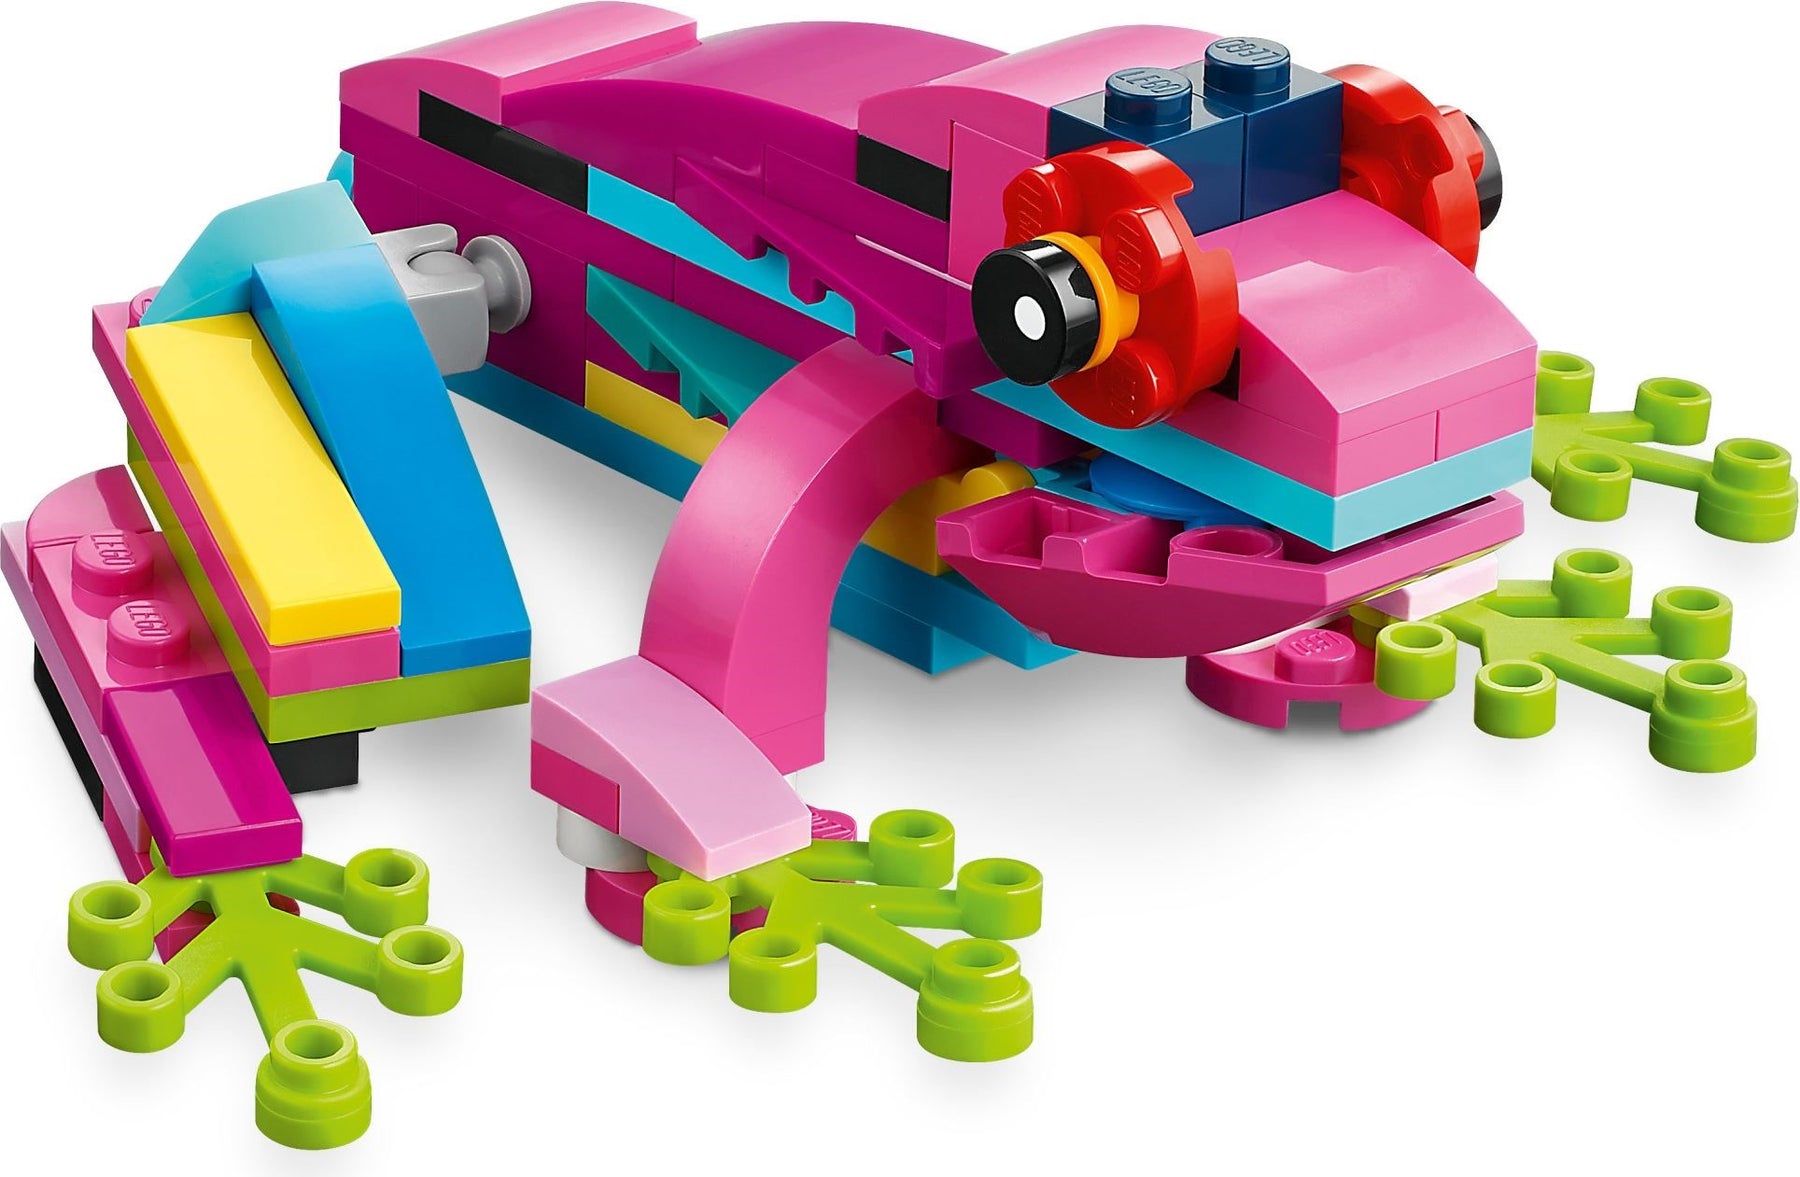 Lego Creator 31144 Eksoottinen Pinkki Papukaija